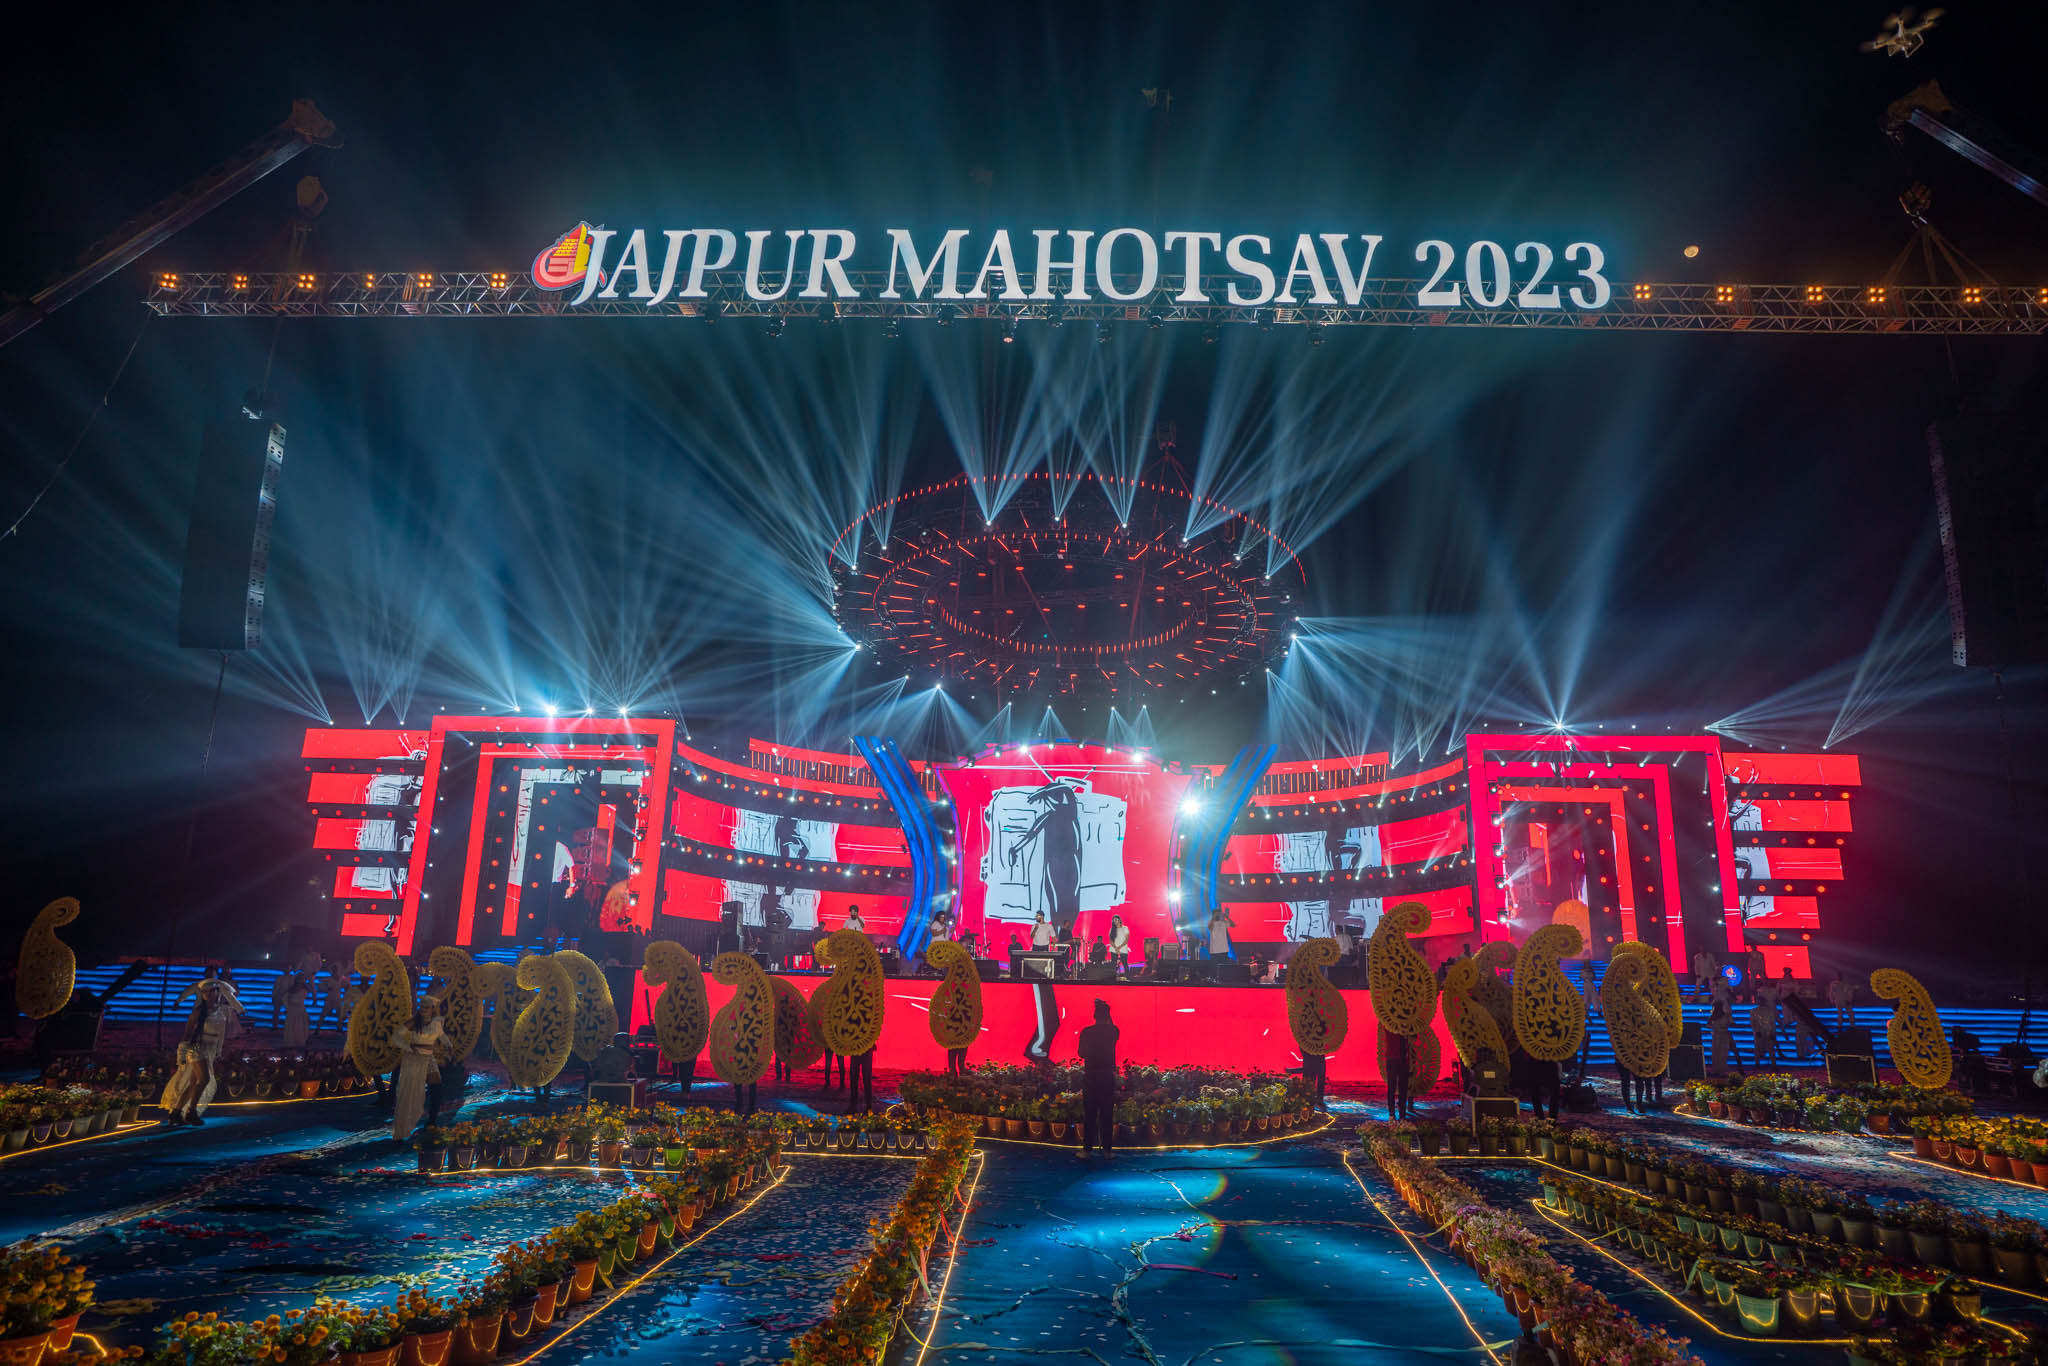 jajpur mahotsav 2023